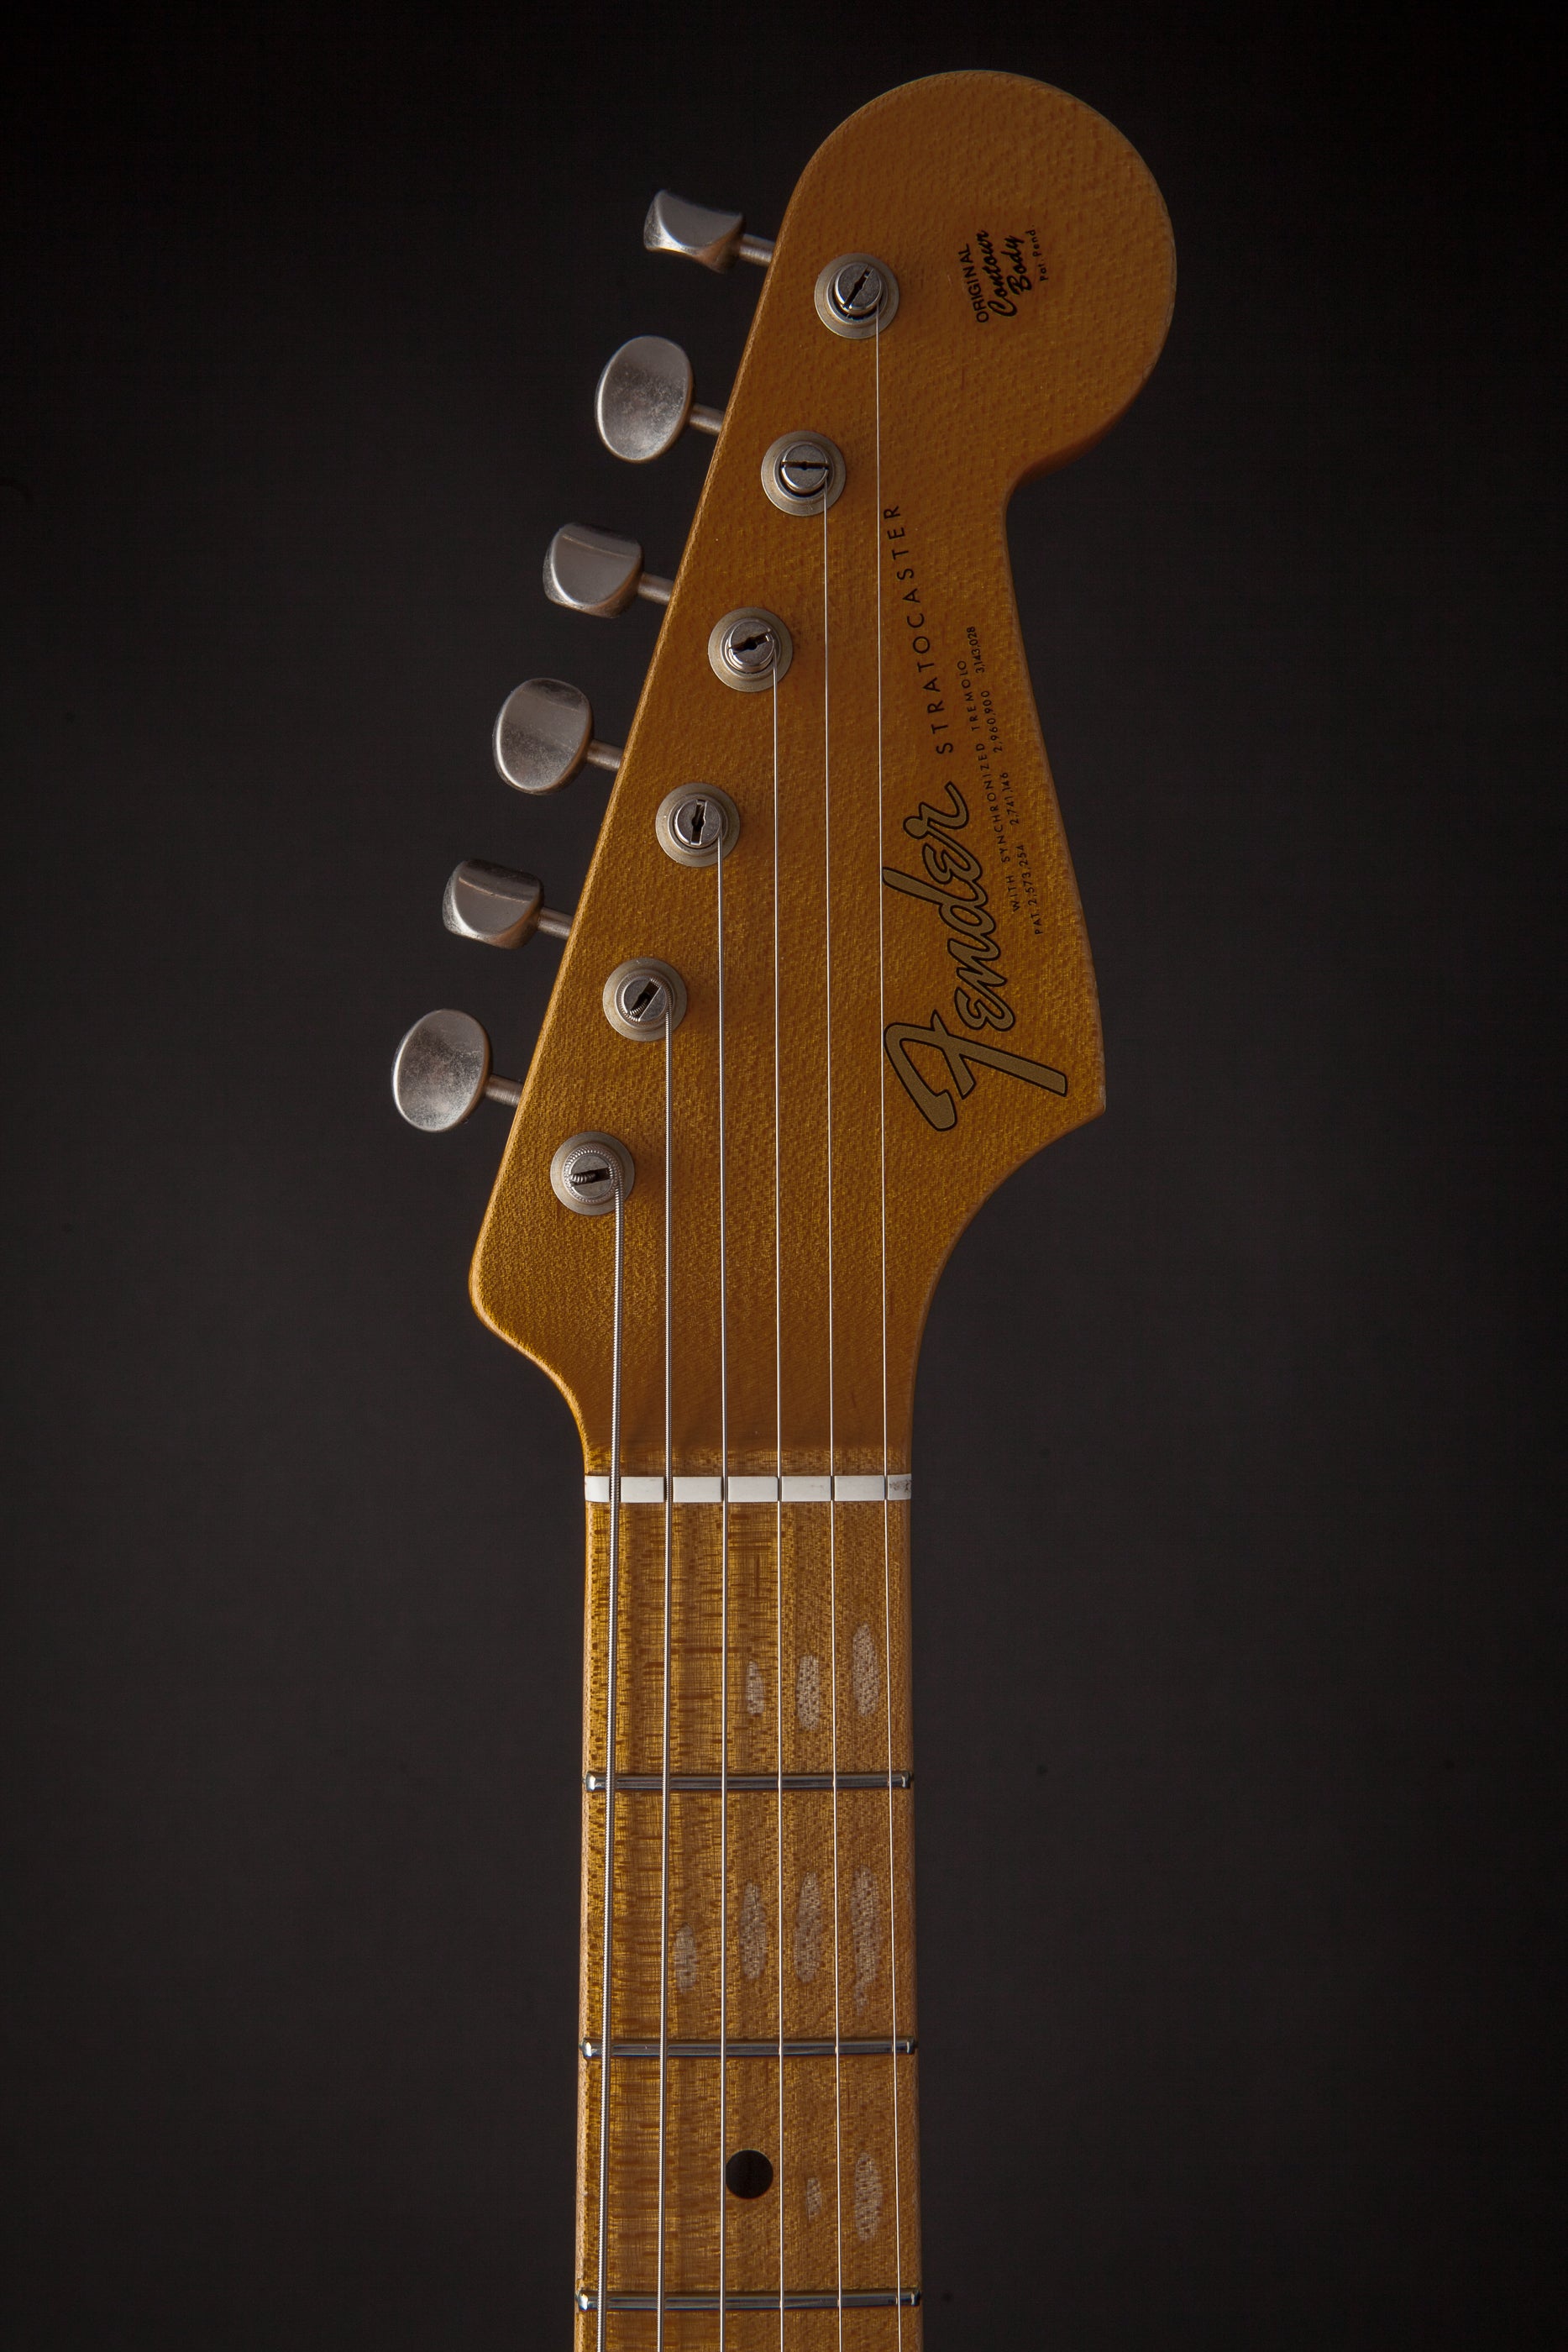 Fender Custom Shop: Post Modern Stratocaster Ltd Journeyman Relic Dakota Red #0050